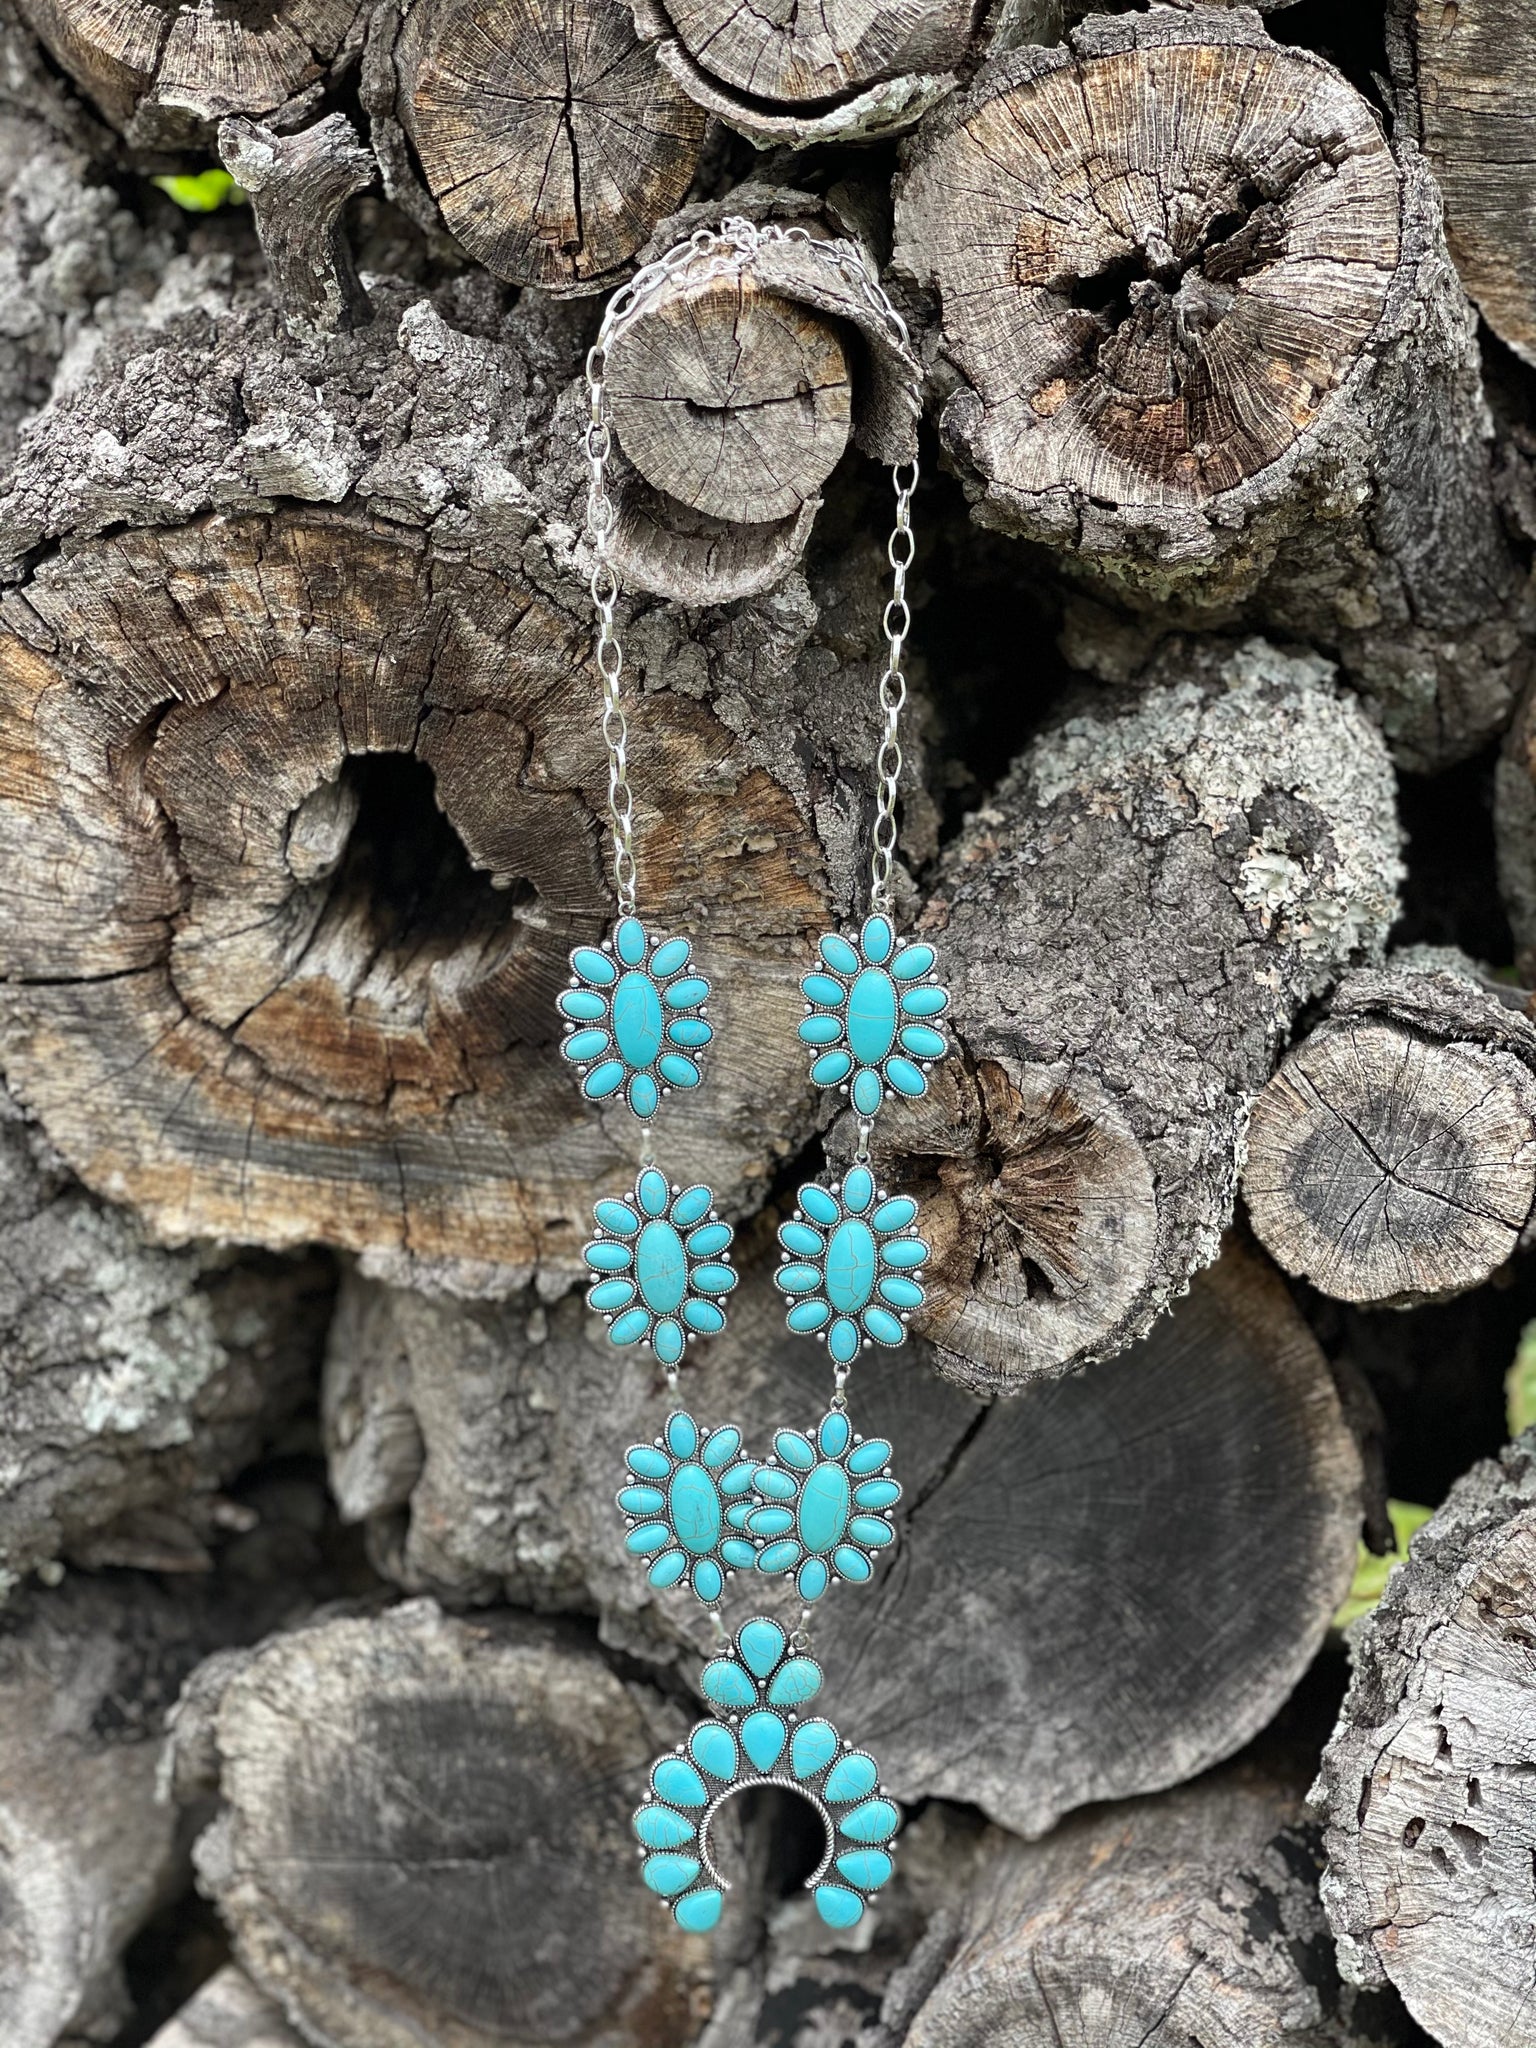 Southwestern turquoise blossom pendant necklace